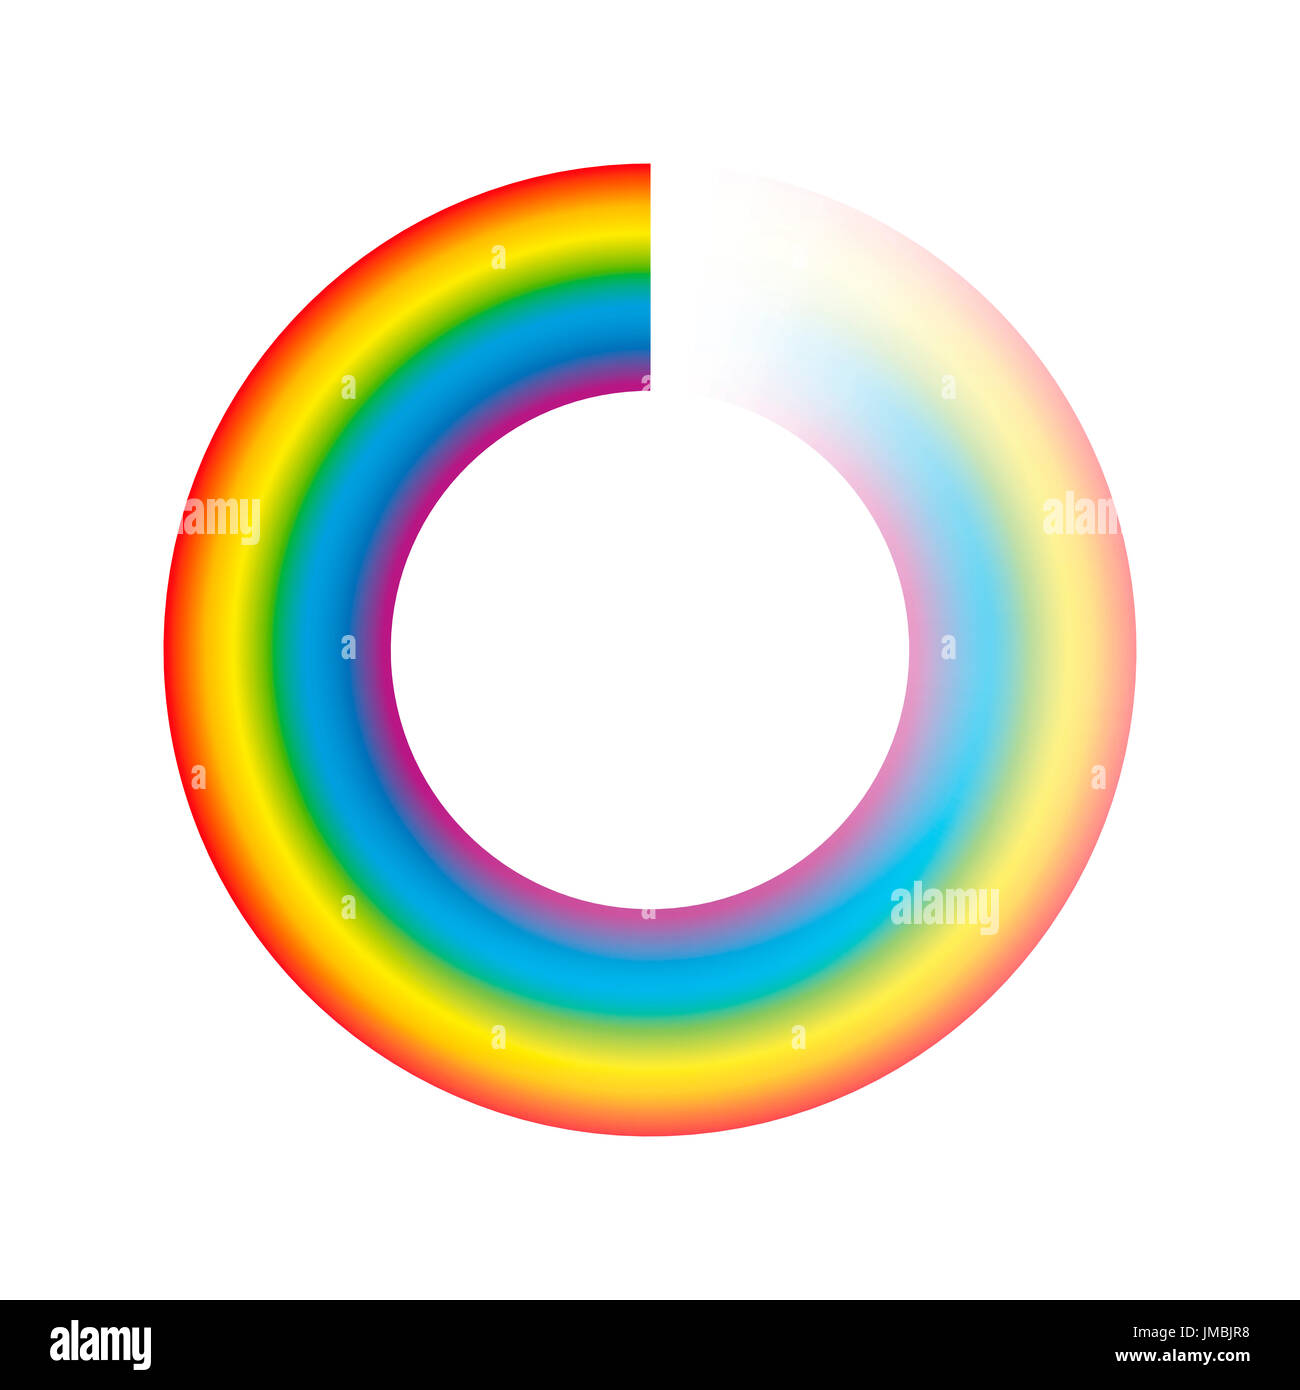 Pufferung, Kreis oder Preloader - Regenbogen farbige Ring mit Transparenz für Animation als Spinnerei Symbol beim Laden, herunterladen oder Streami verwendet werden Stockfoto